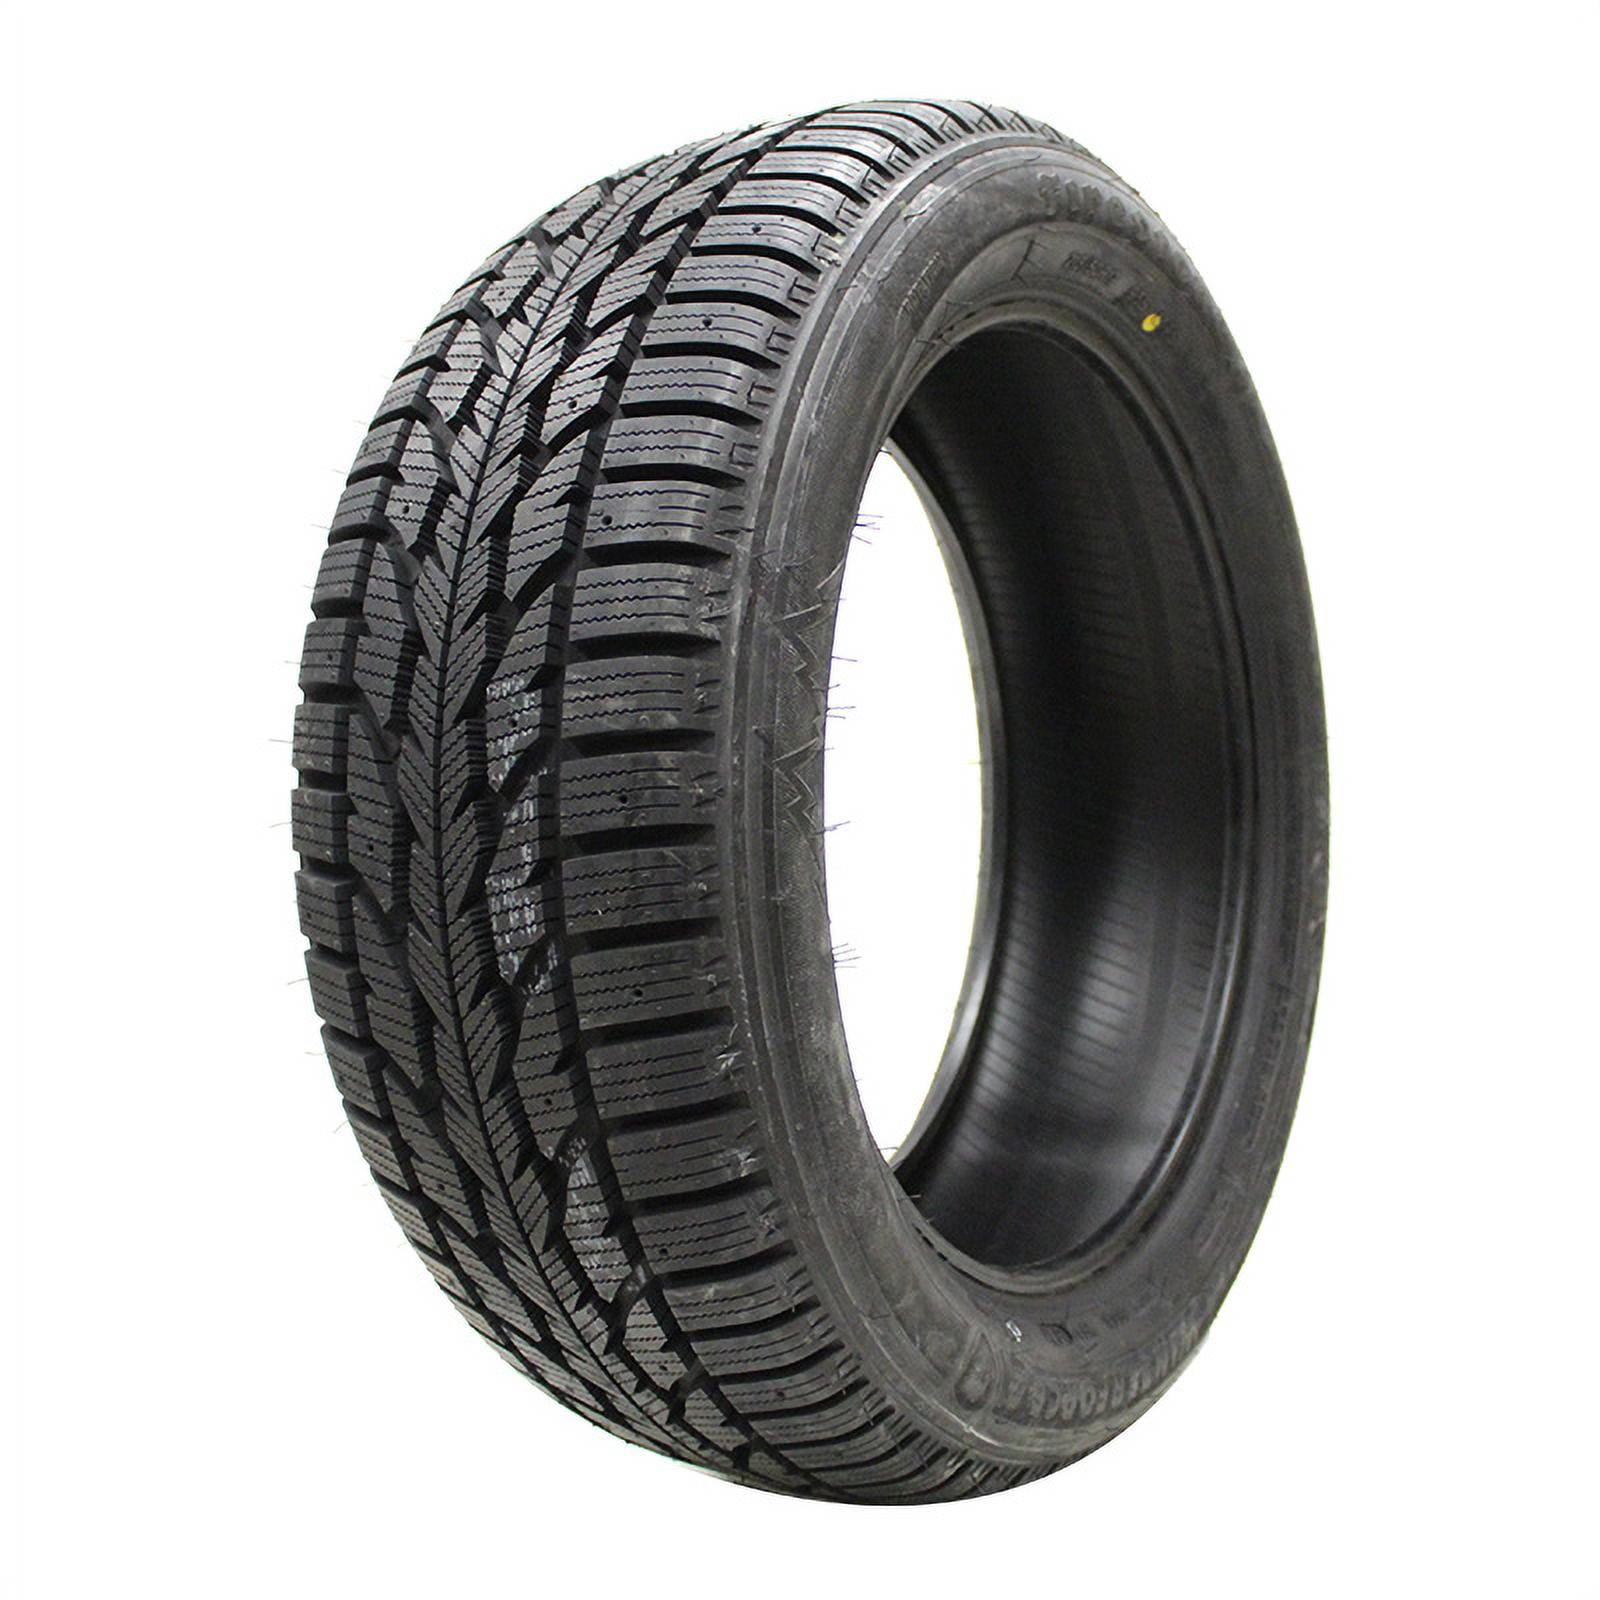 Tire Dunlop 2 Winter 215/55R16 Winter 97T Maxx